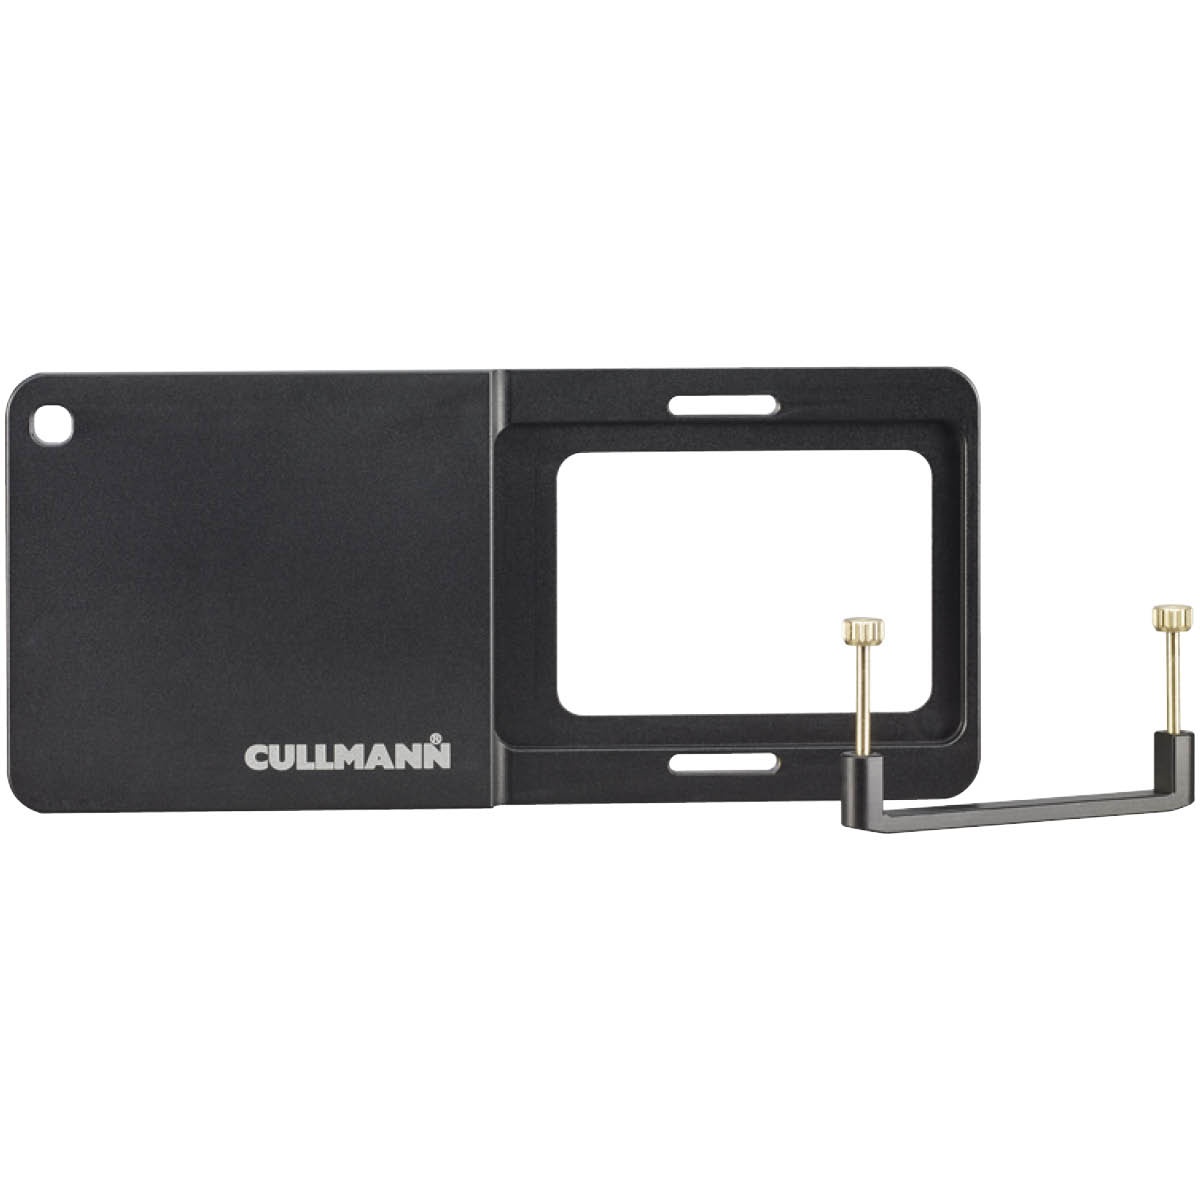 Cullmann Cross CX 127 Adapter